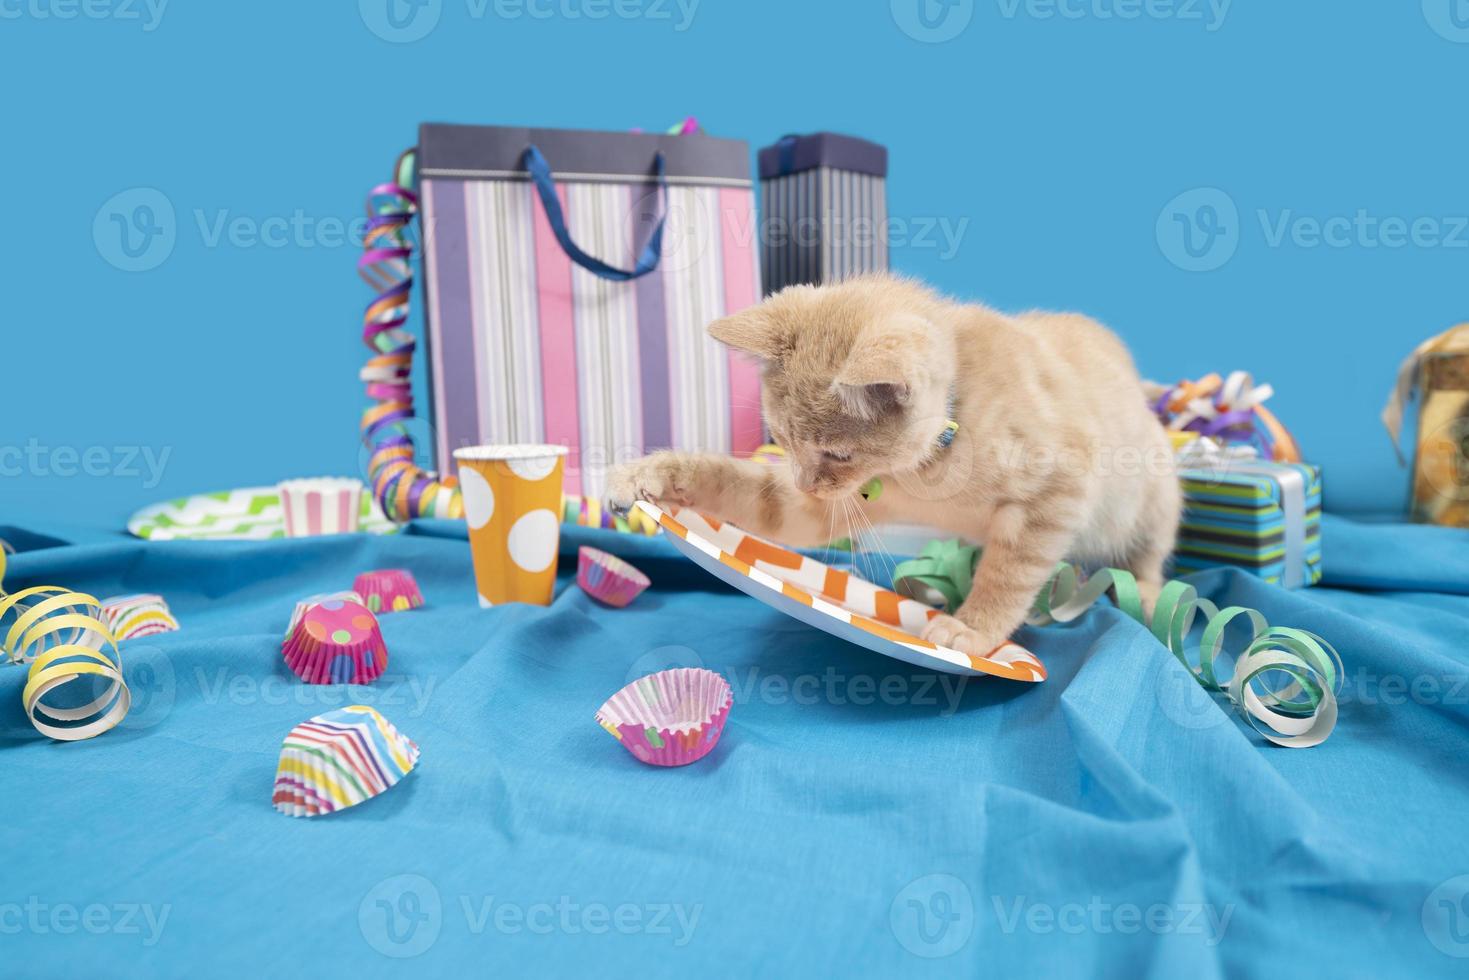 pequeno gato de gato de bebê amarelo pequeno bagunçando uma mesa de aniversário com serpentinas e sacolas de brindes em uma toalha de mesa azul contra fundo azul claro foto